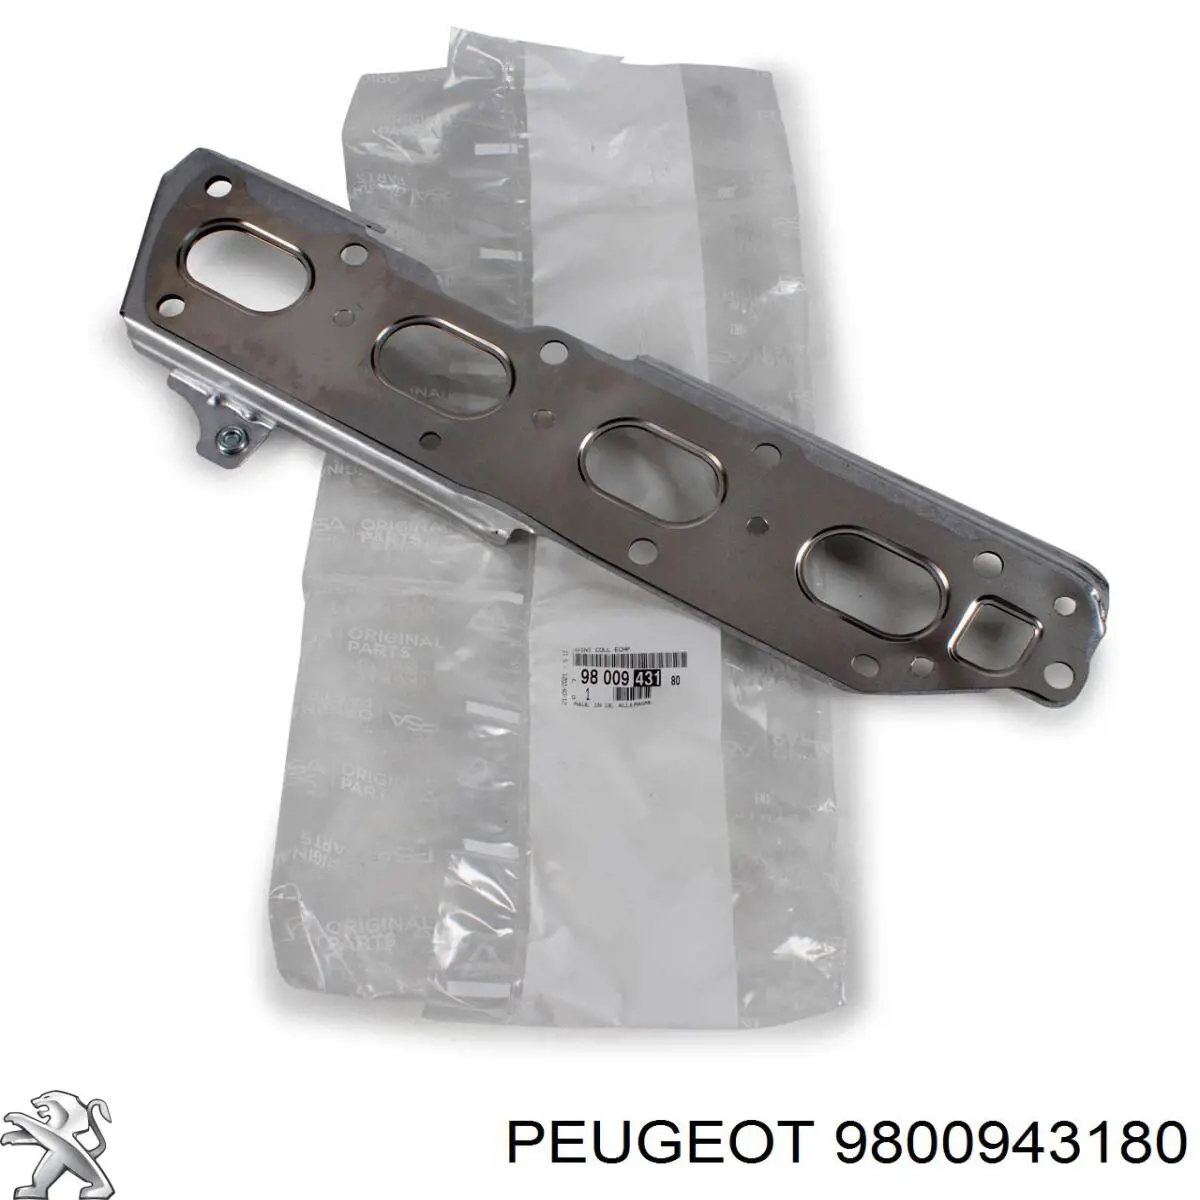 9800943180 Peugeot/Citroen vedante de tubo coletor de escape